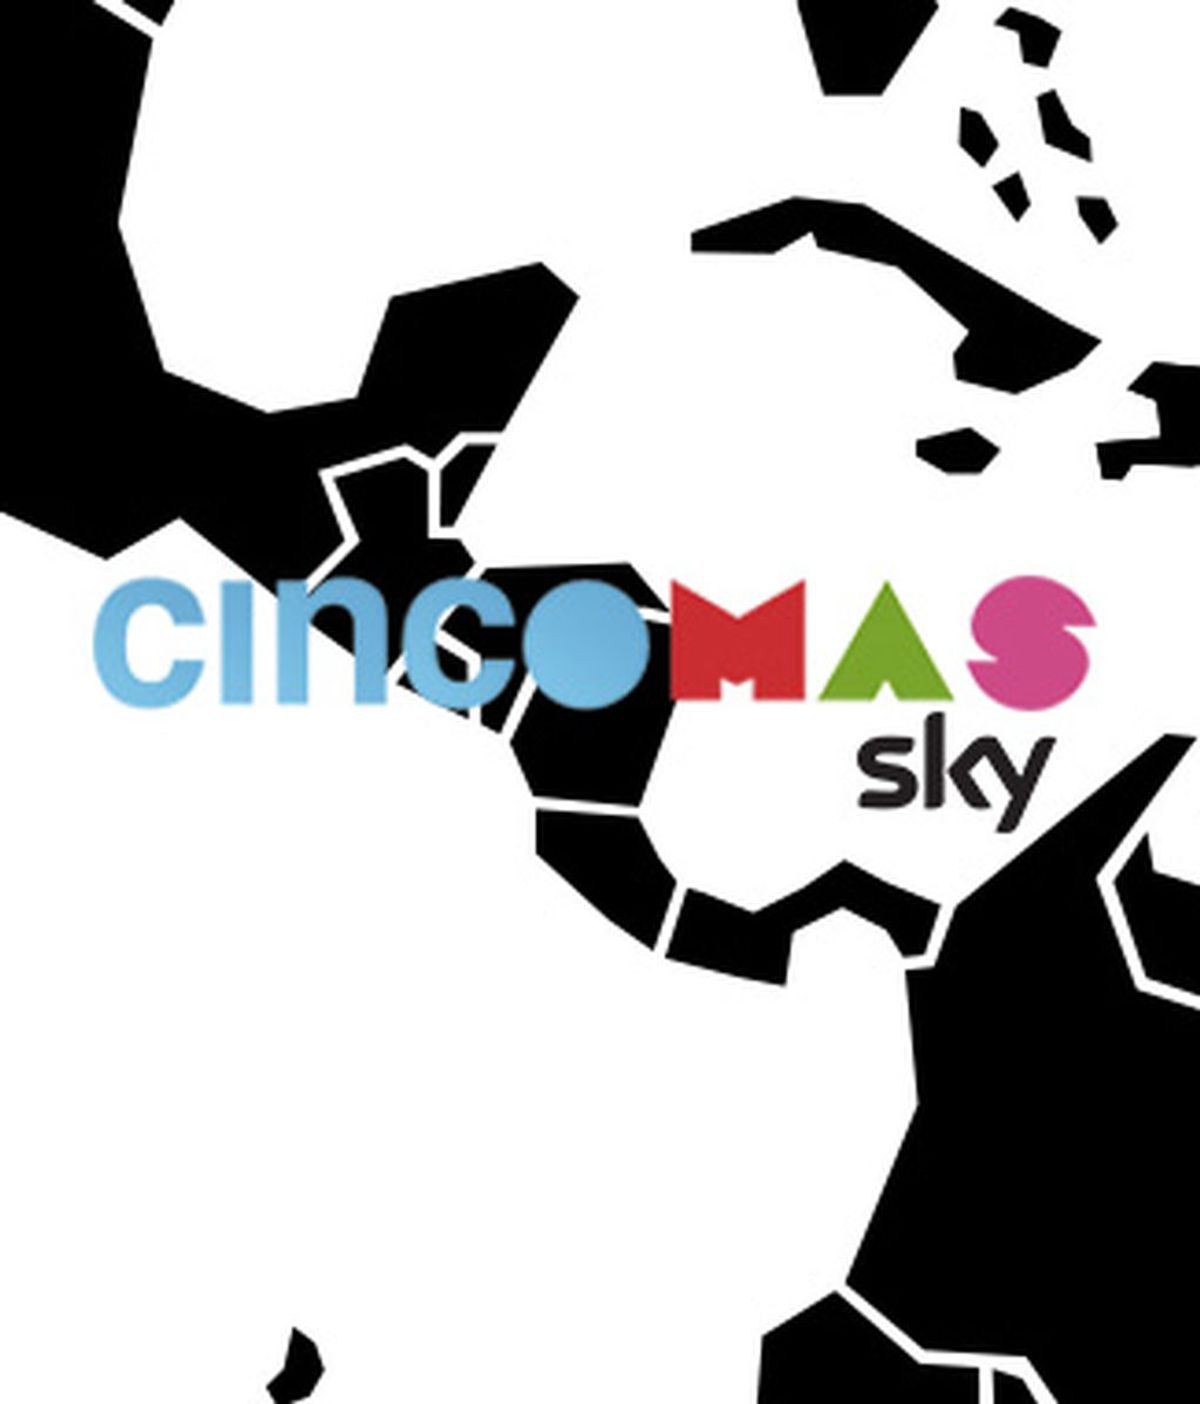 CincoMAS inicia sus emisiones en Costa Rica y Guatemala y amplía su señal en Panamá